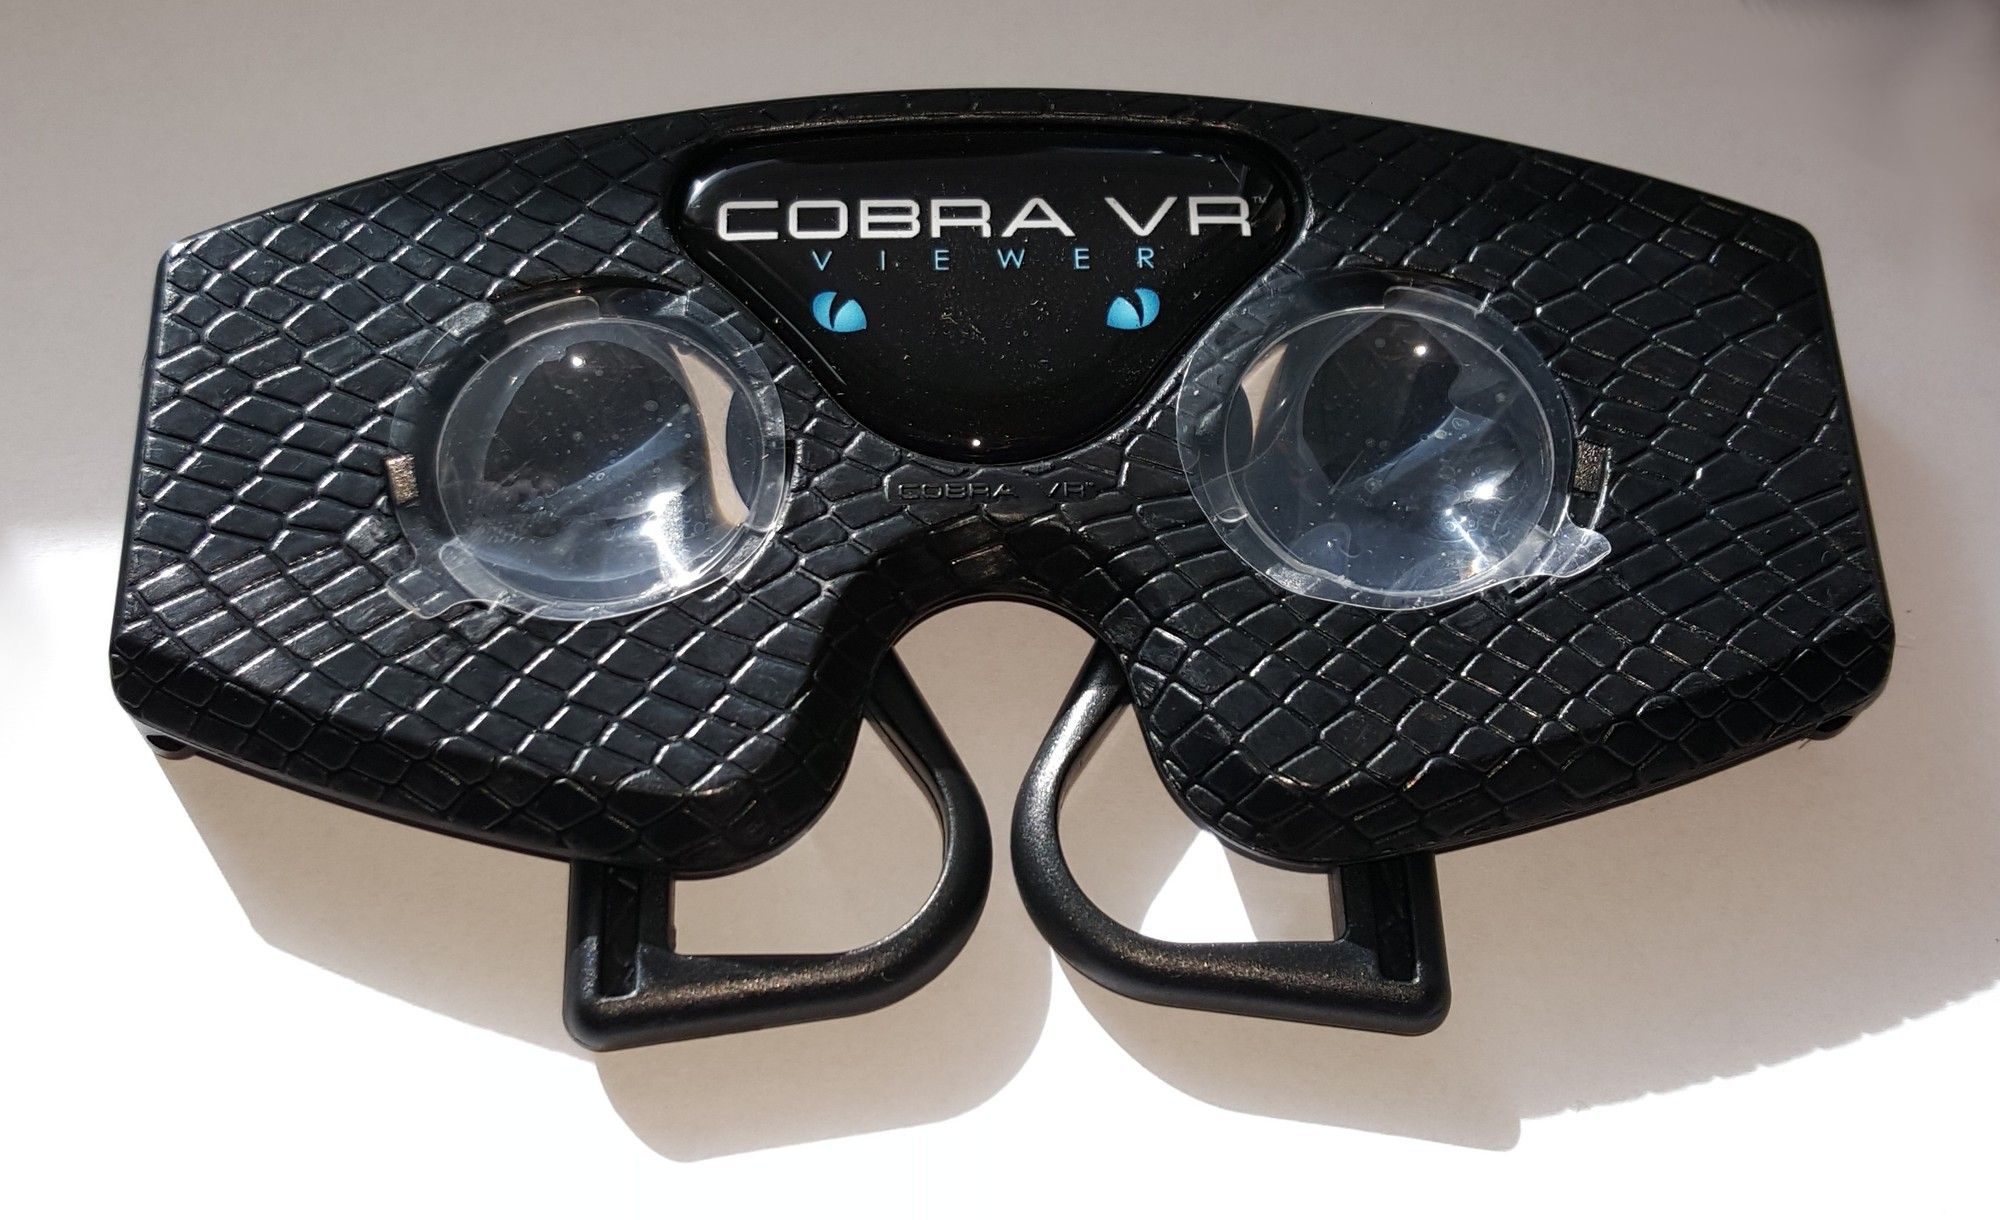 samtale udrydde kaste støv i øjnene GearBrain's 9 Best Open-Sided VR Headsets Buying Guide - Gearbrain